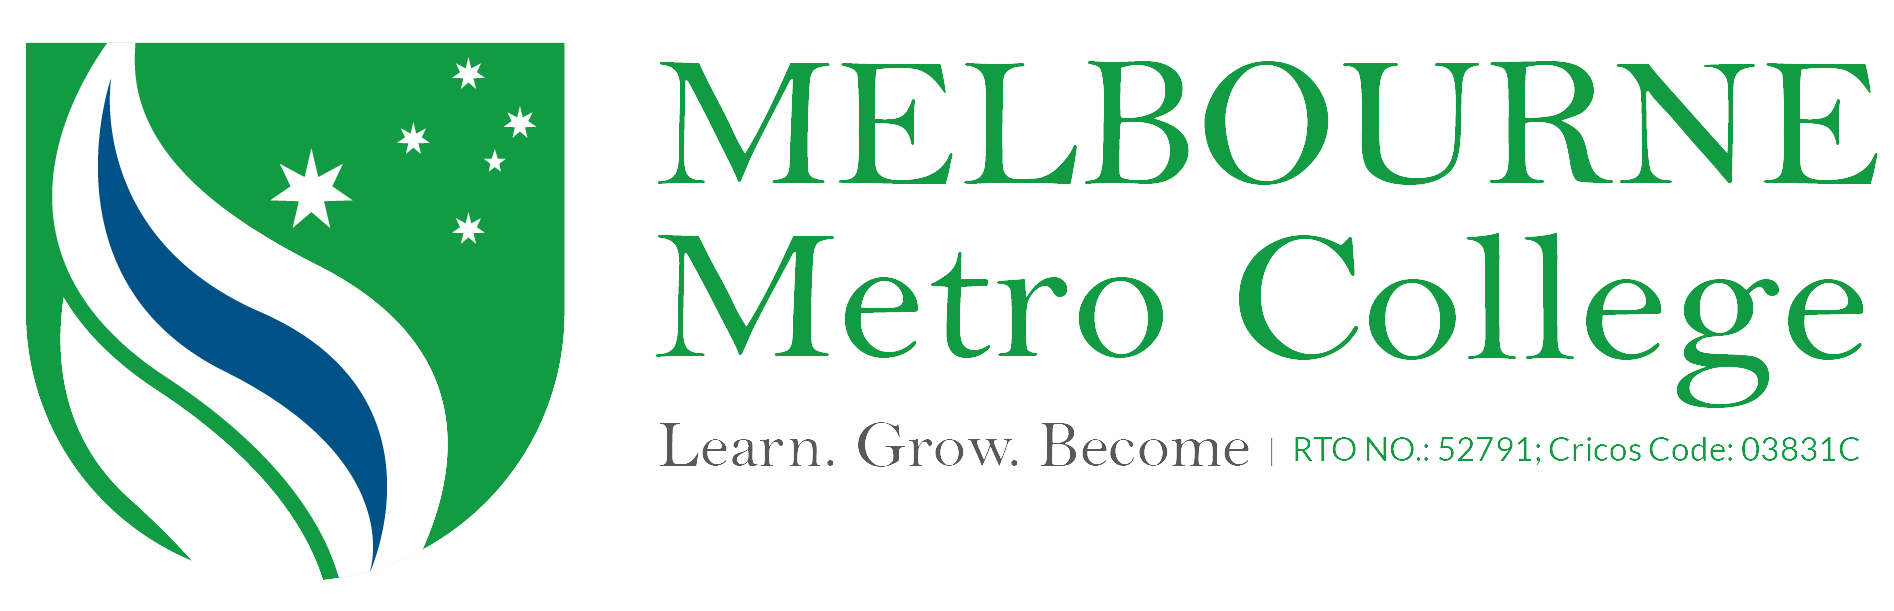 Melbourne Metro College